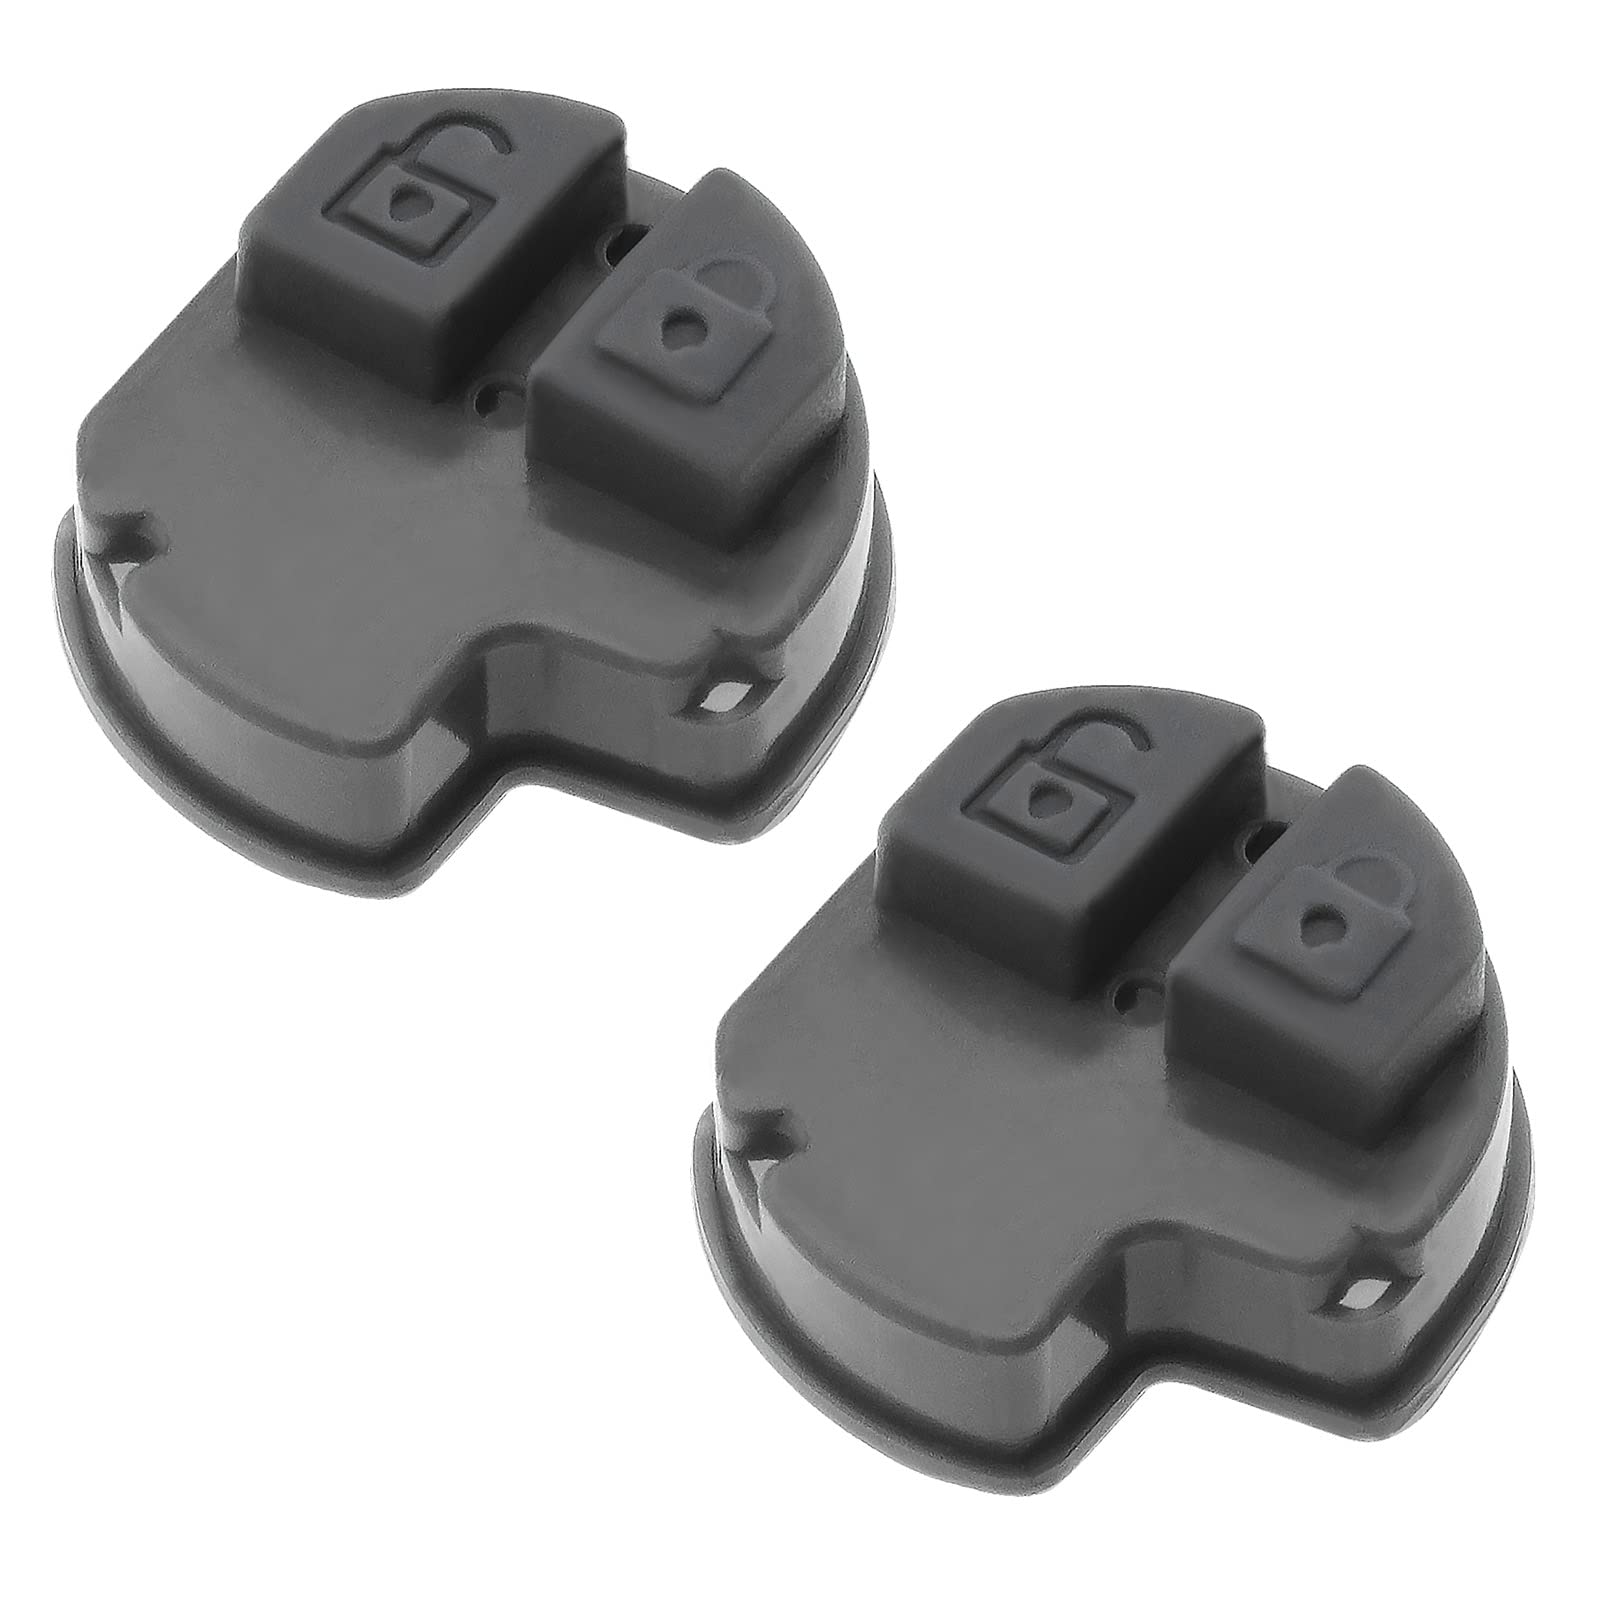 ECSiNG 2 Stück 2 Tasten Auto Funkschlüssel Gummi Pad Ersatz kompatibel mit Suzuki Swift / SX4 / Liana/Aerio/Vitara/Ignis Auto-Tastaturabdeckung von ECSiNG